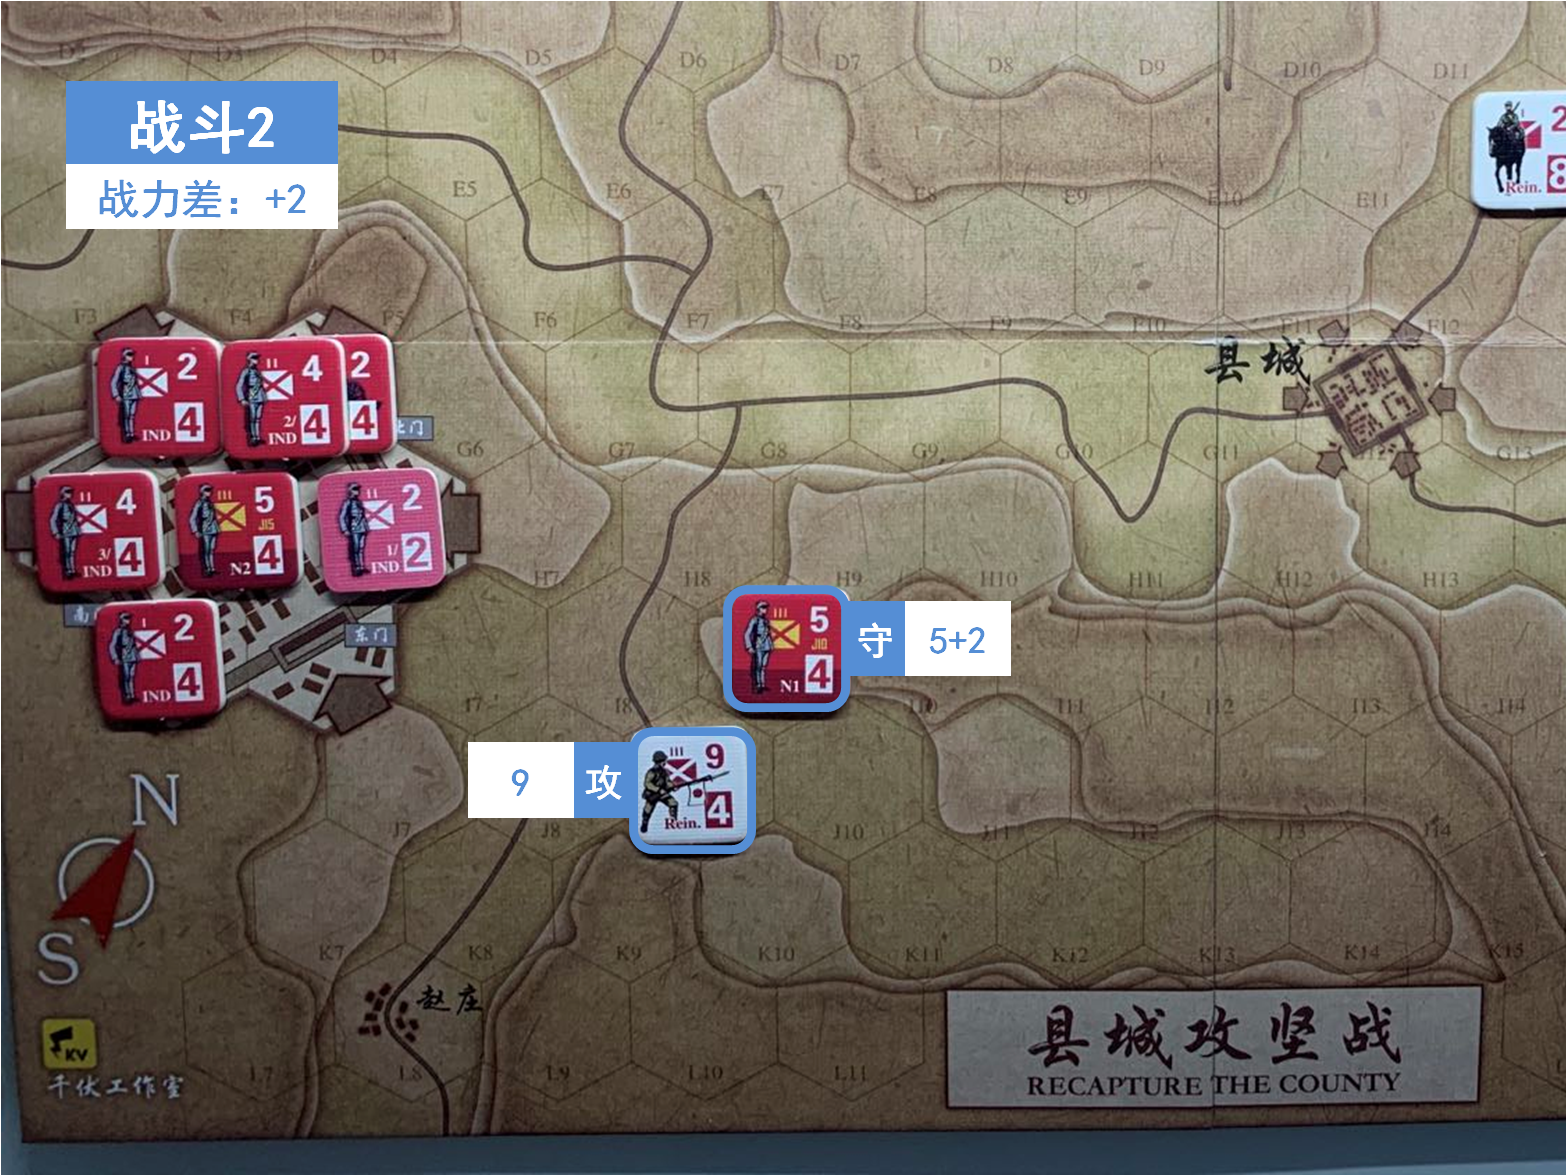 第三回合 日方戰鬥階段 戰鬥2 戰鬥力差值